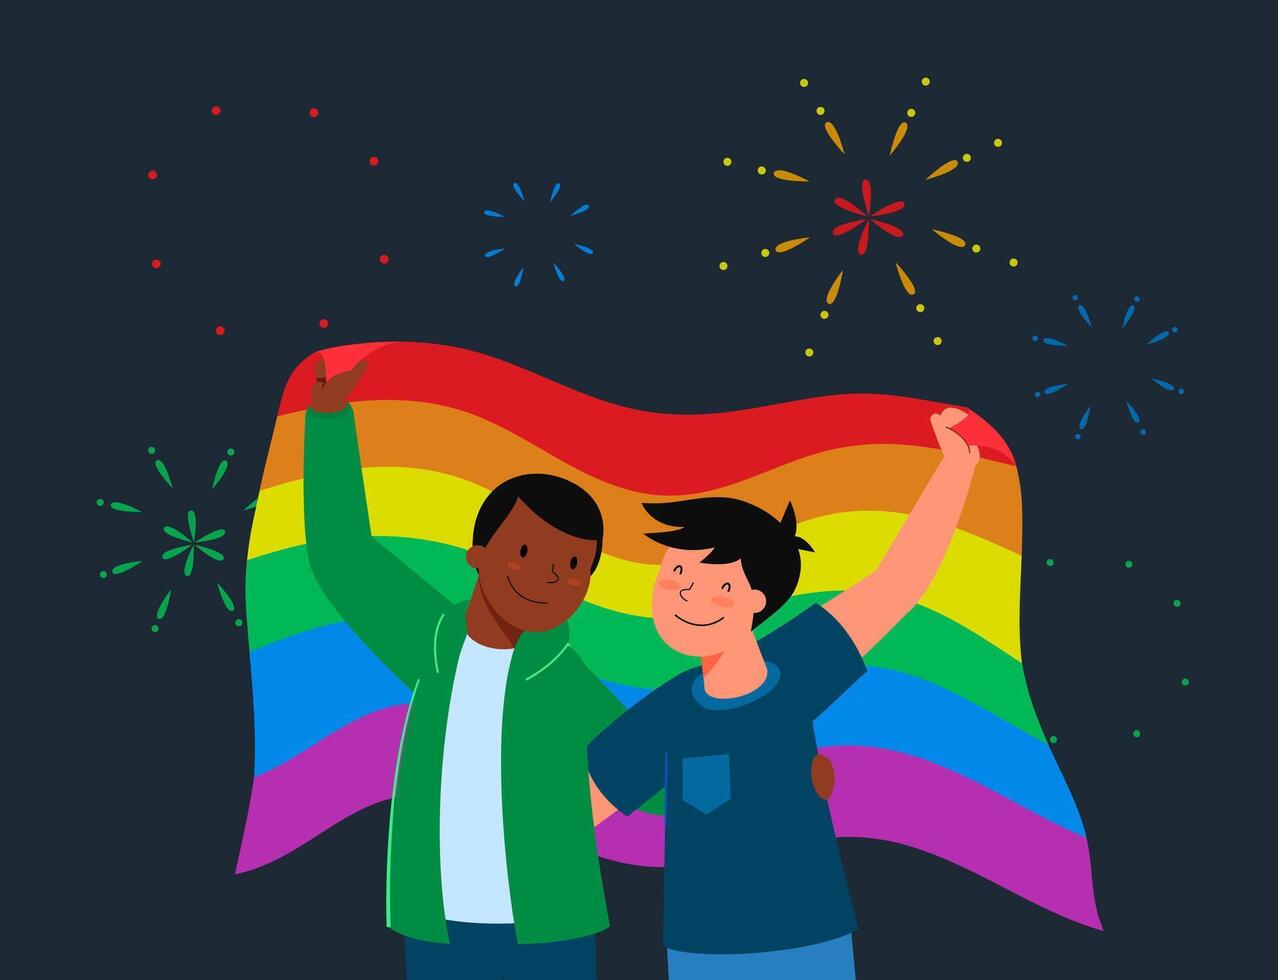 concetto di prade lgbt pride festival. coppia maschio omosessuale che tiene bandiera lgbt. illustrazione vettoriale di personaggio dei cartoni animati piatto.